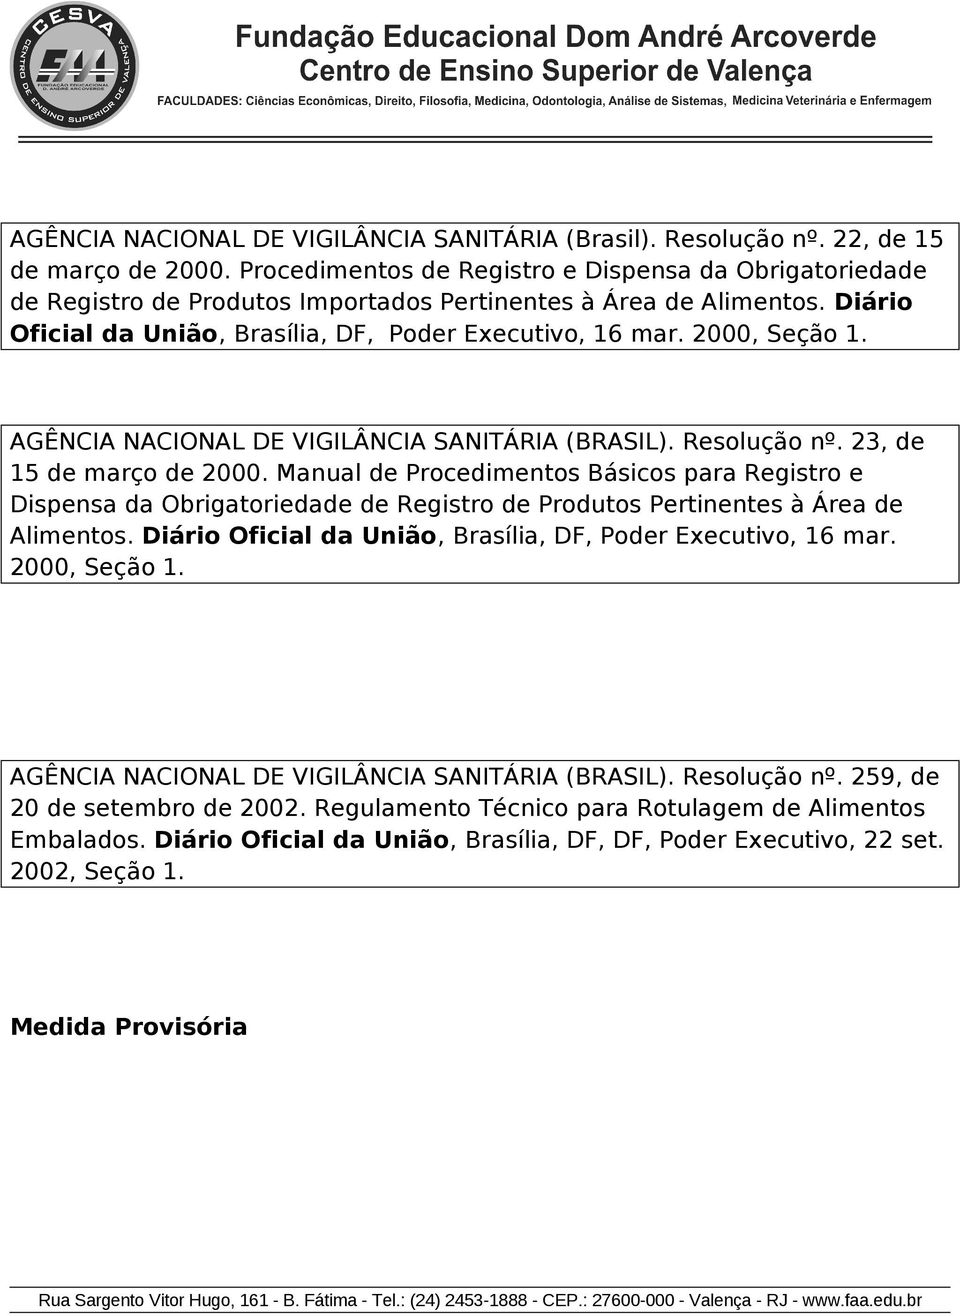 AGÊNCIA NACIONAL DE VIGILÂNCIA SANITÁRIA (BRASIL). Resluçã nº. 23, de 15 de març de 2000.